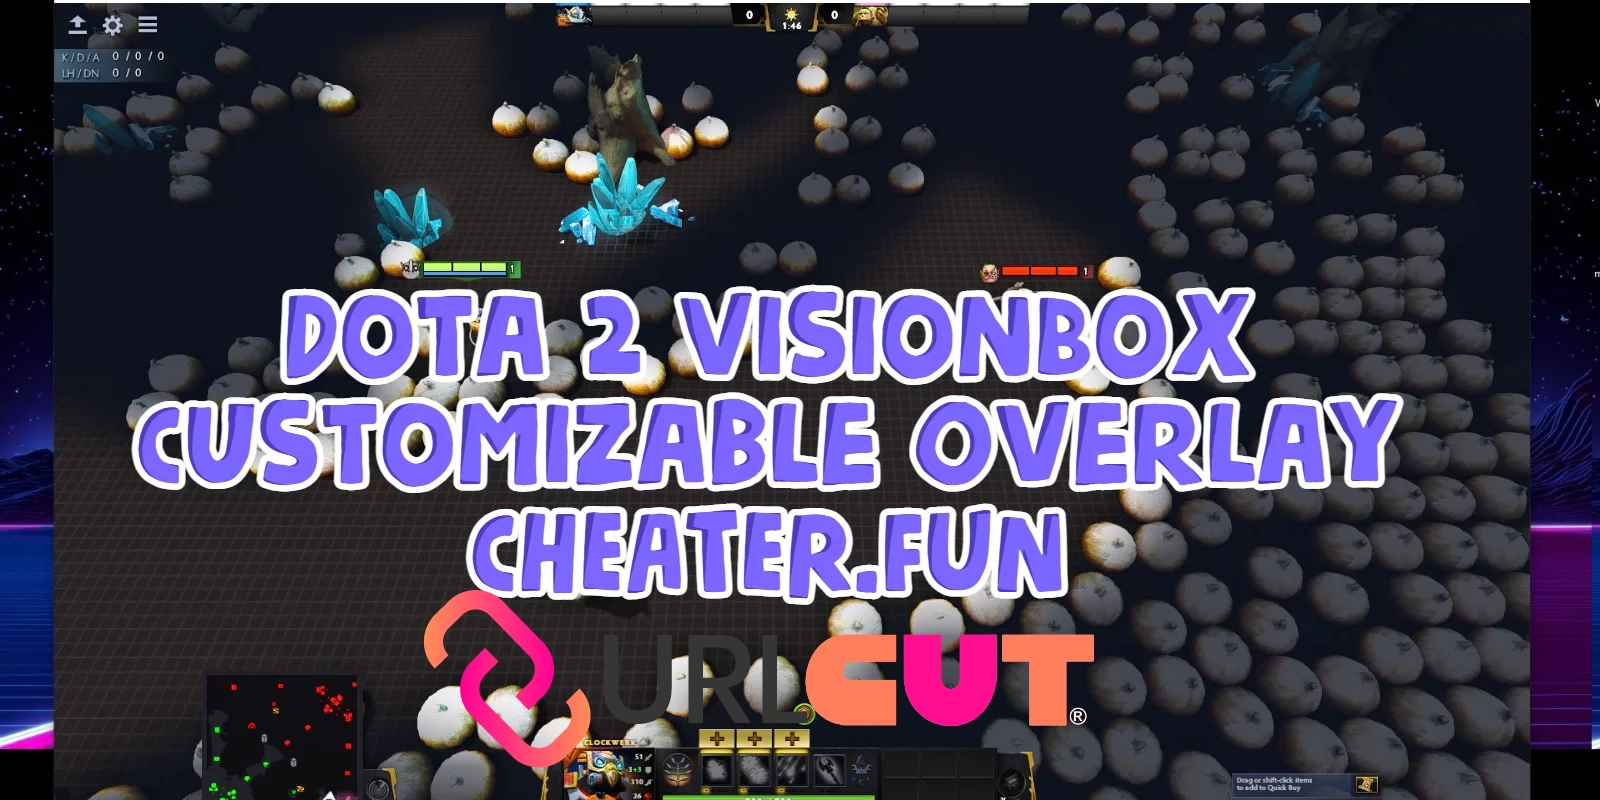  		  Dota 2 VisionBox - Customizable Overlay  		                                                                                                                  	   